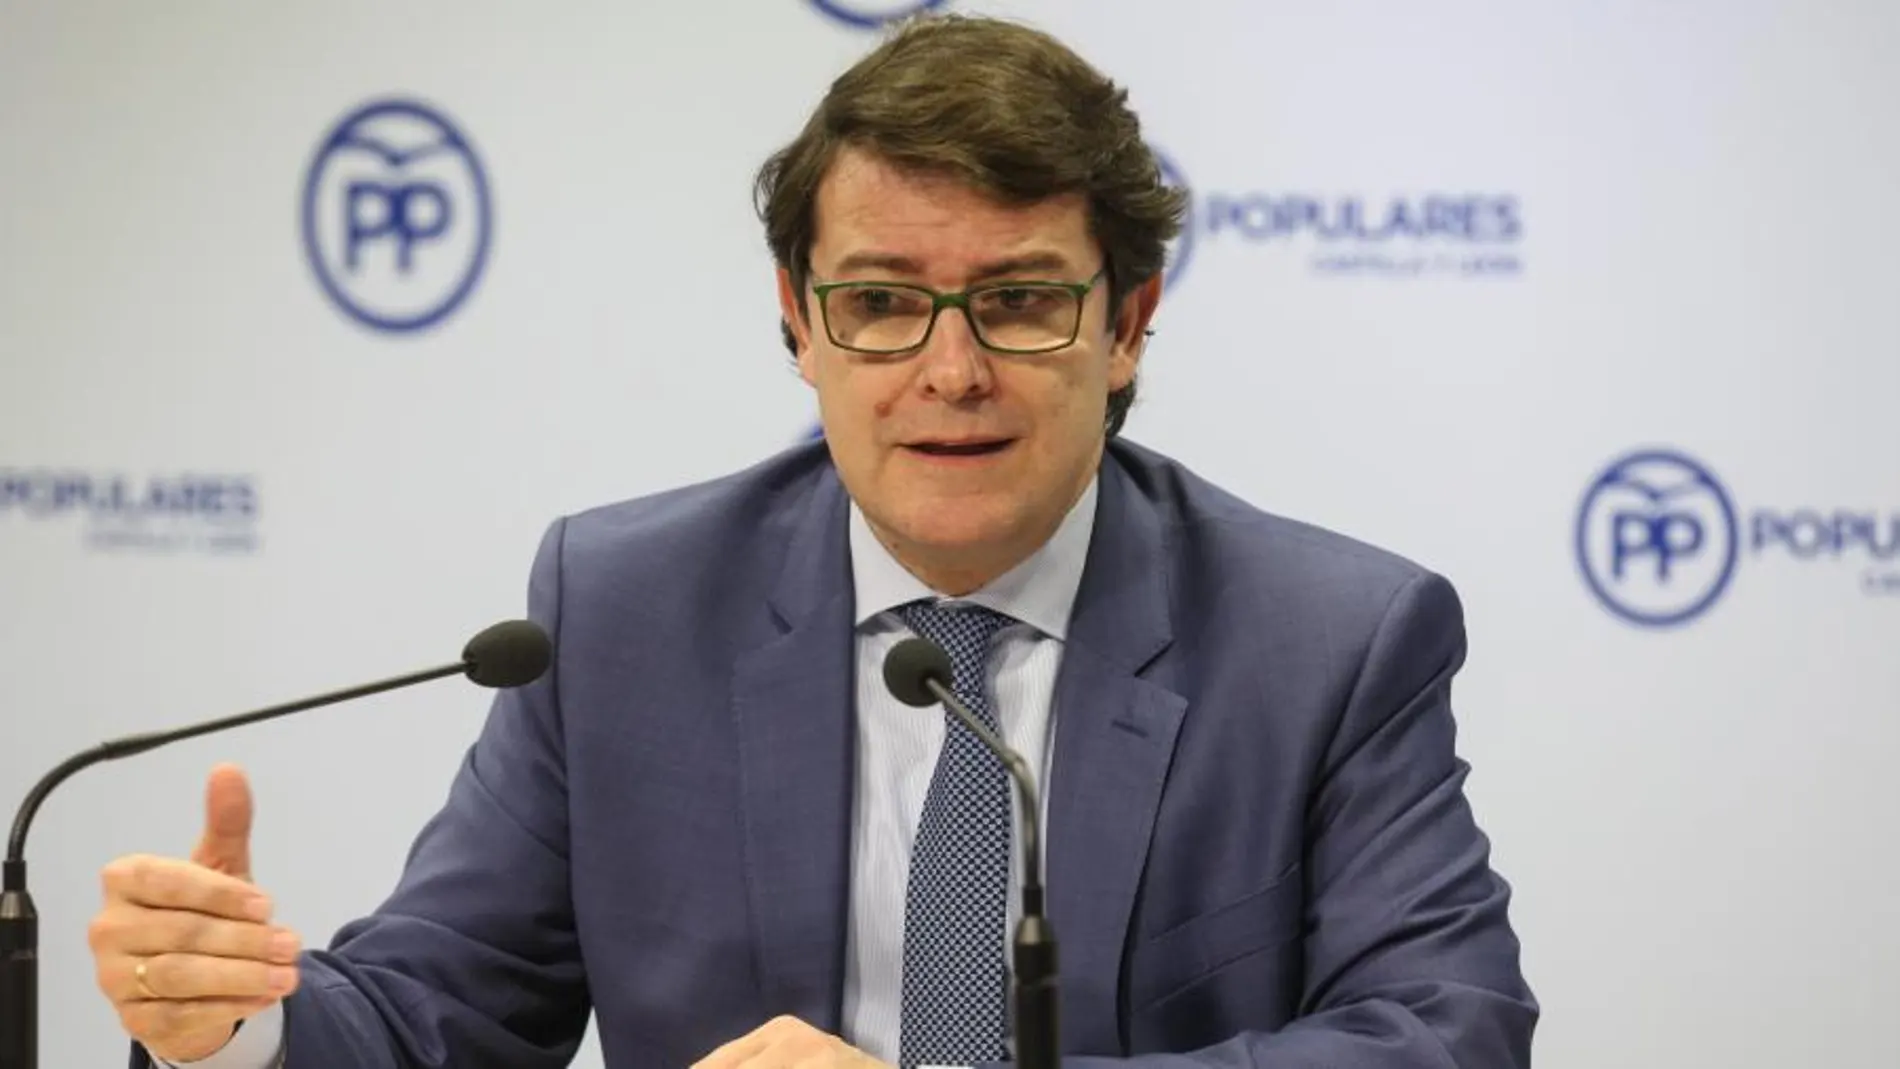 El presidente del PPCyL, Alfonso Fernández Mañueco, presenta los objetivos del partido para 2018.